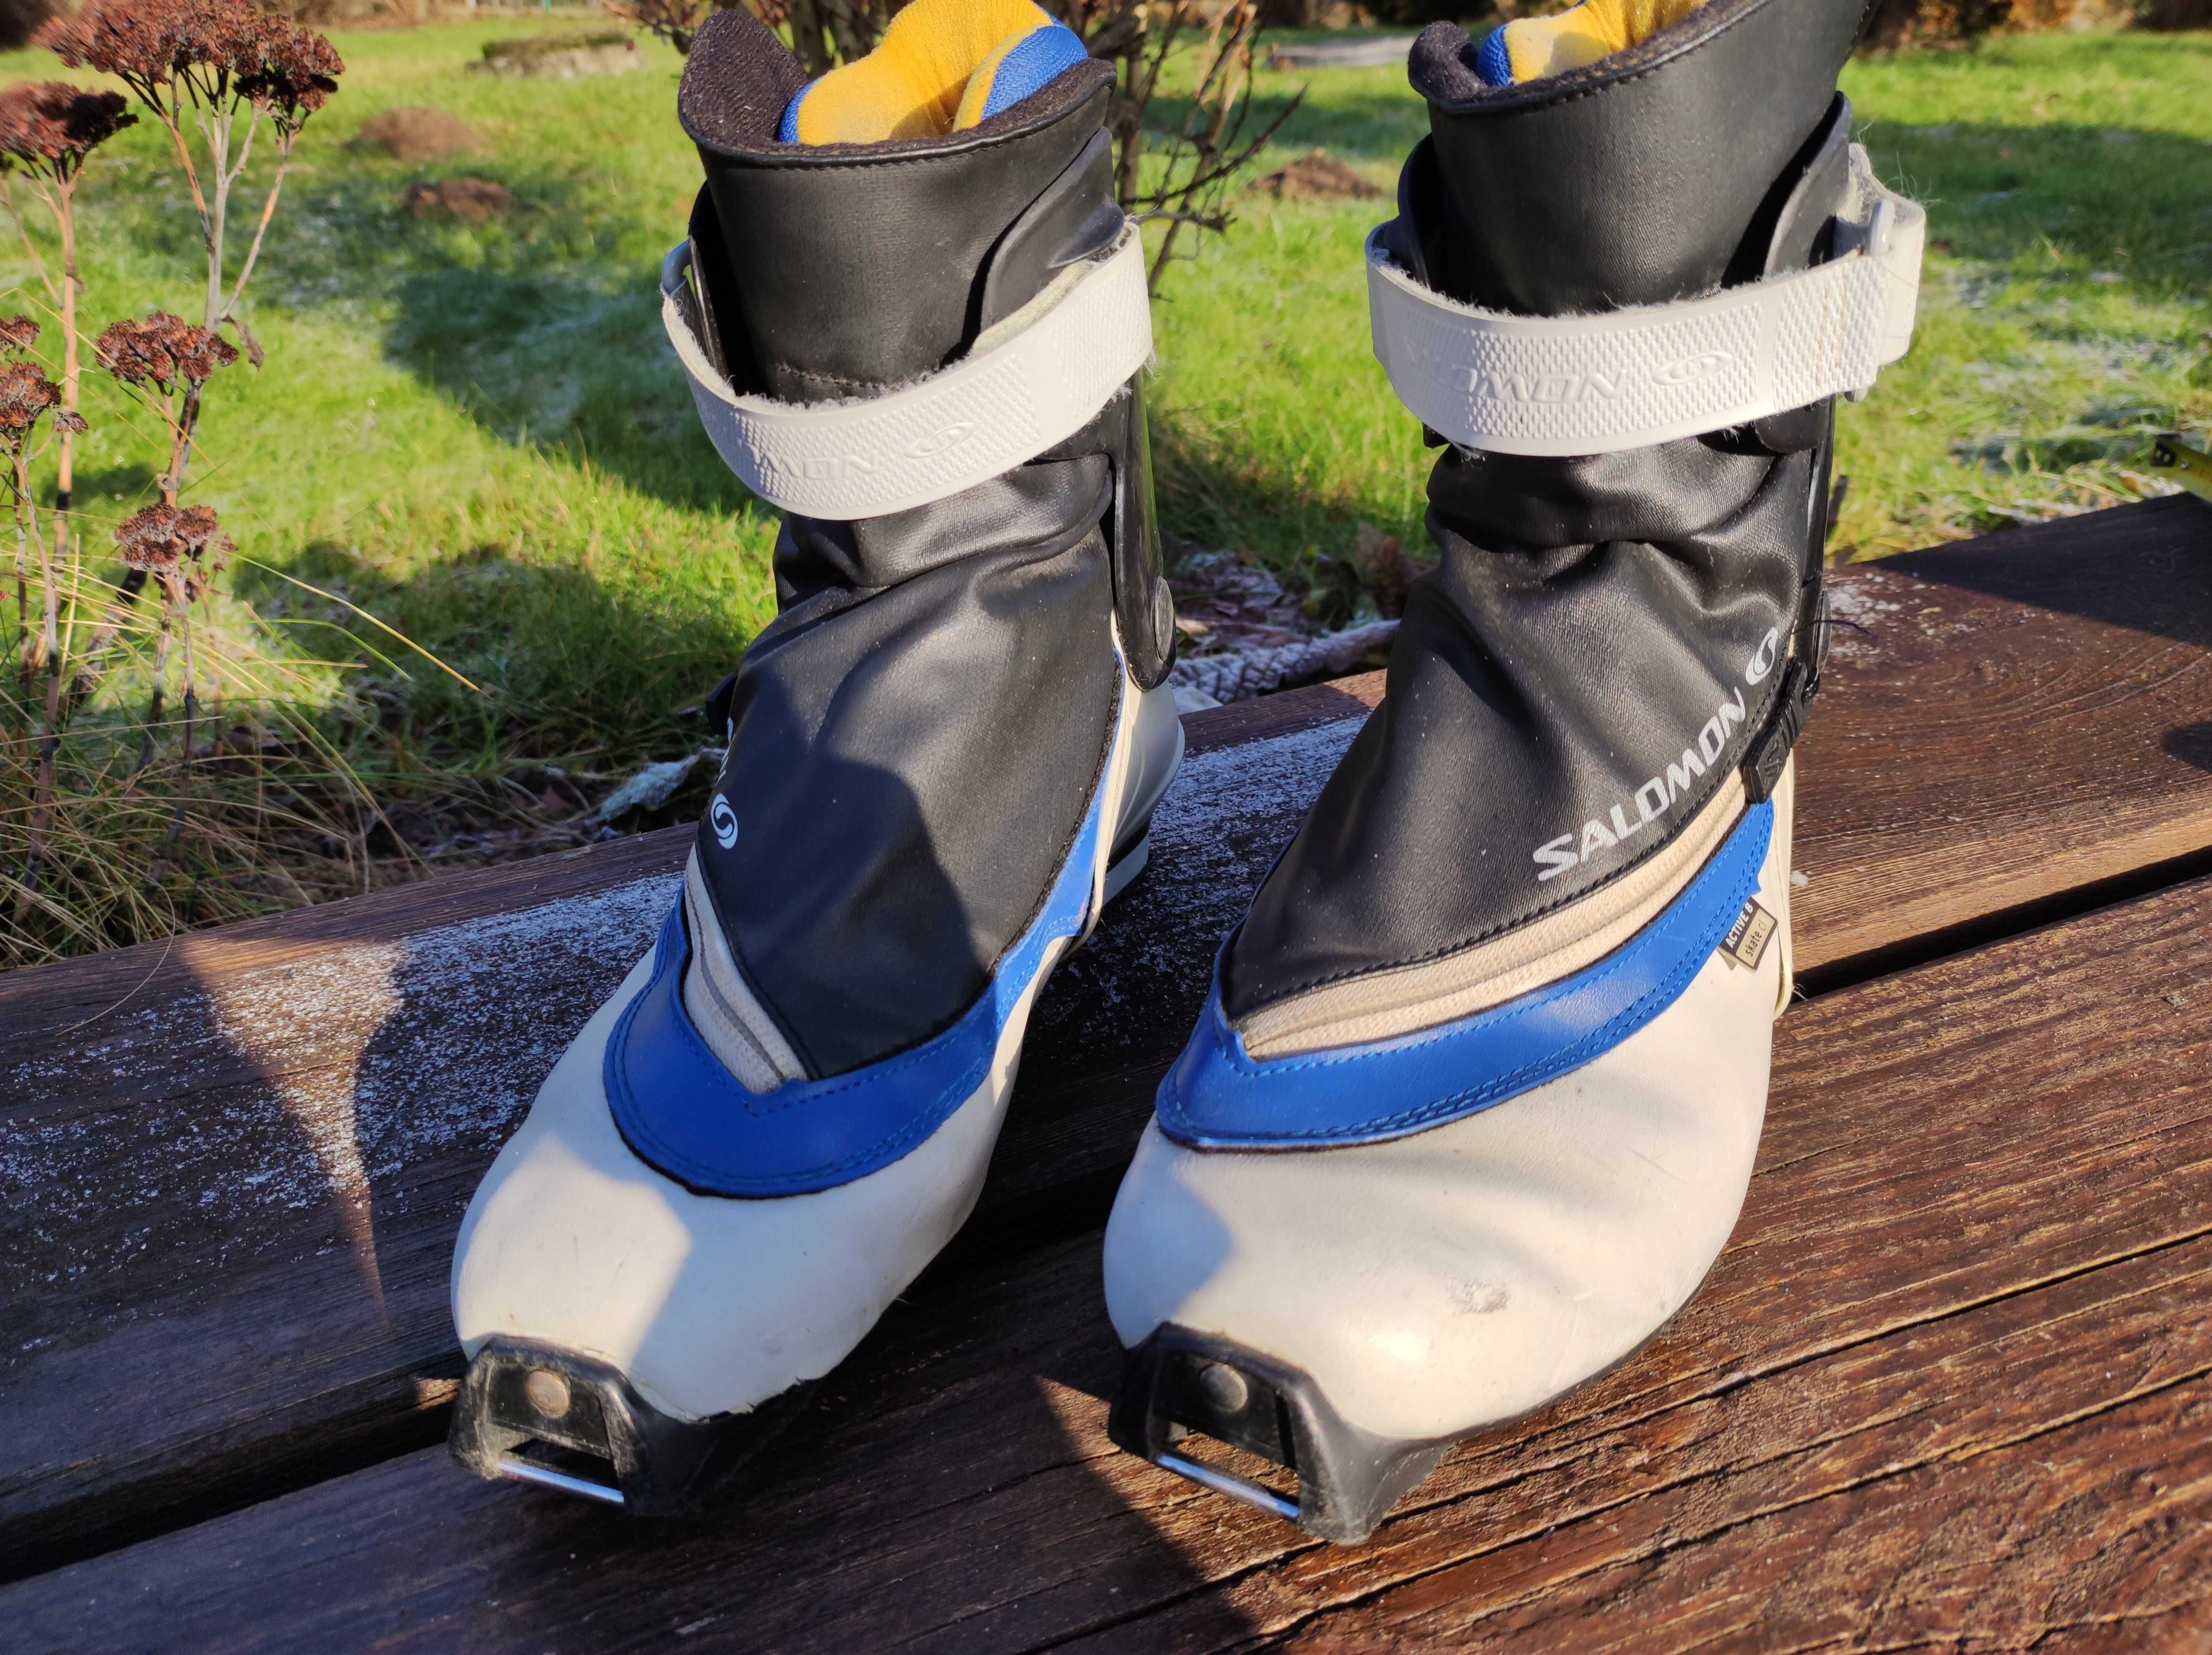 Buty do nart biegowych biegówki Salomon Active 8 skate CL roz 41 1/3